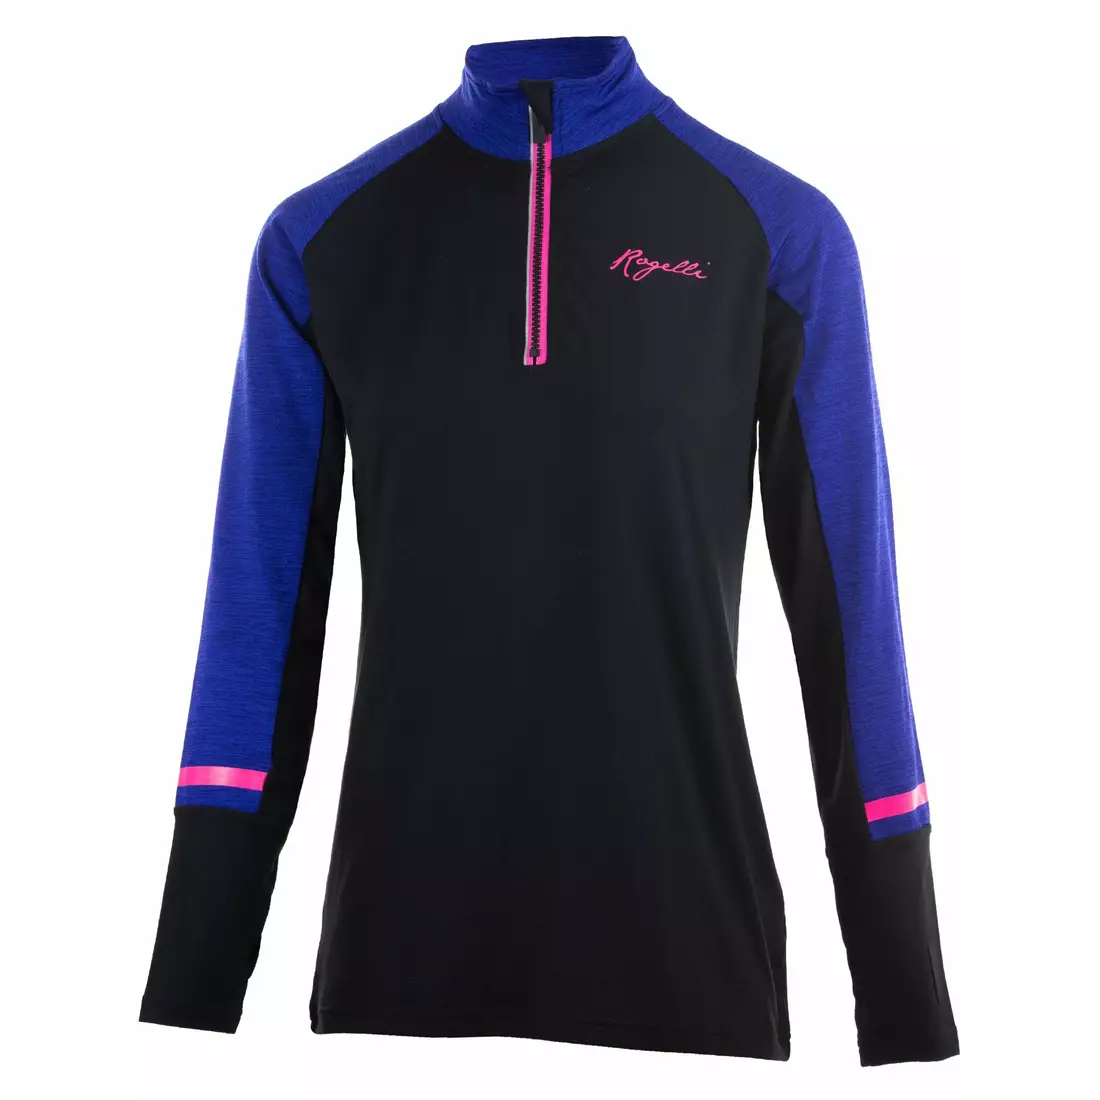 Rogelli COSMIC Dámske bežecké tričko s dlhým rukávom čierno-modro-ružové 840.666